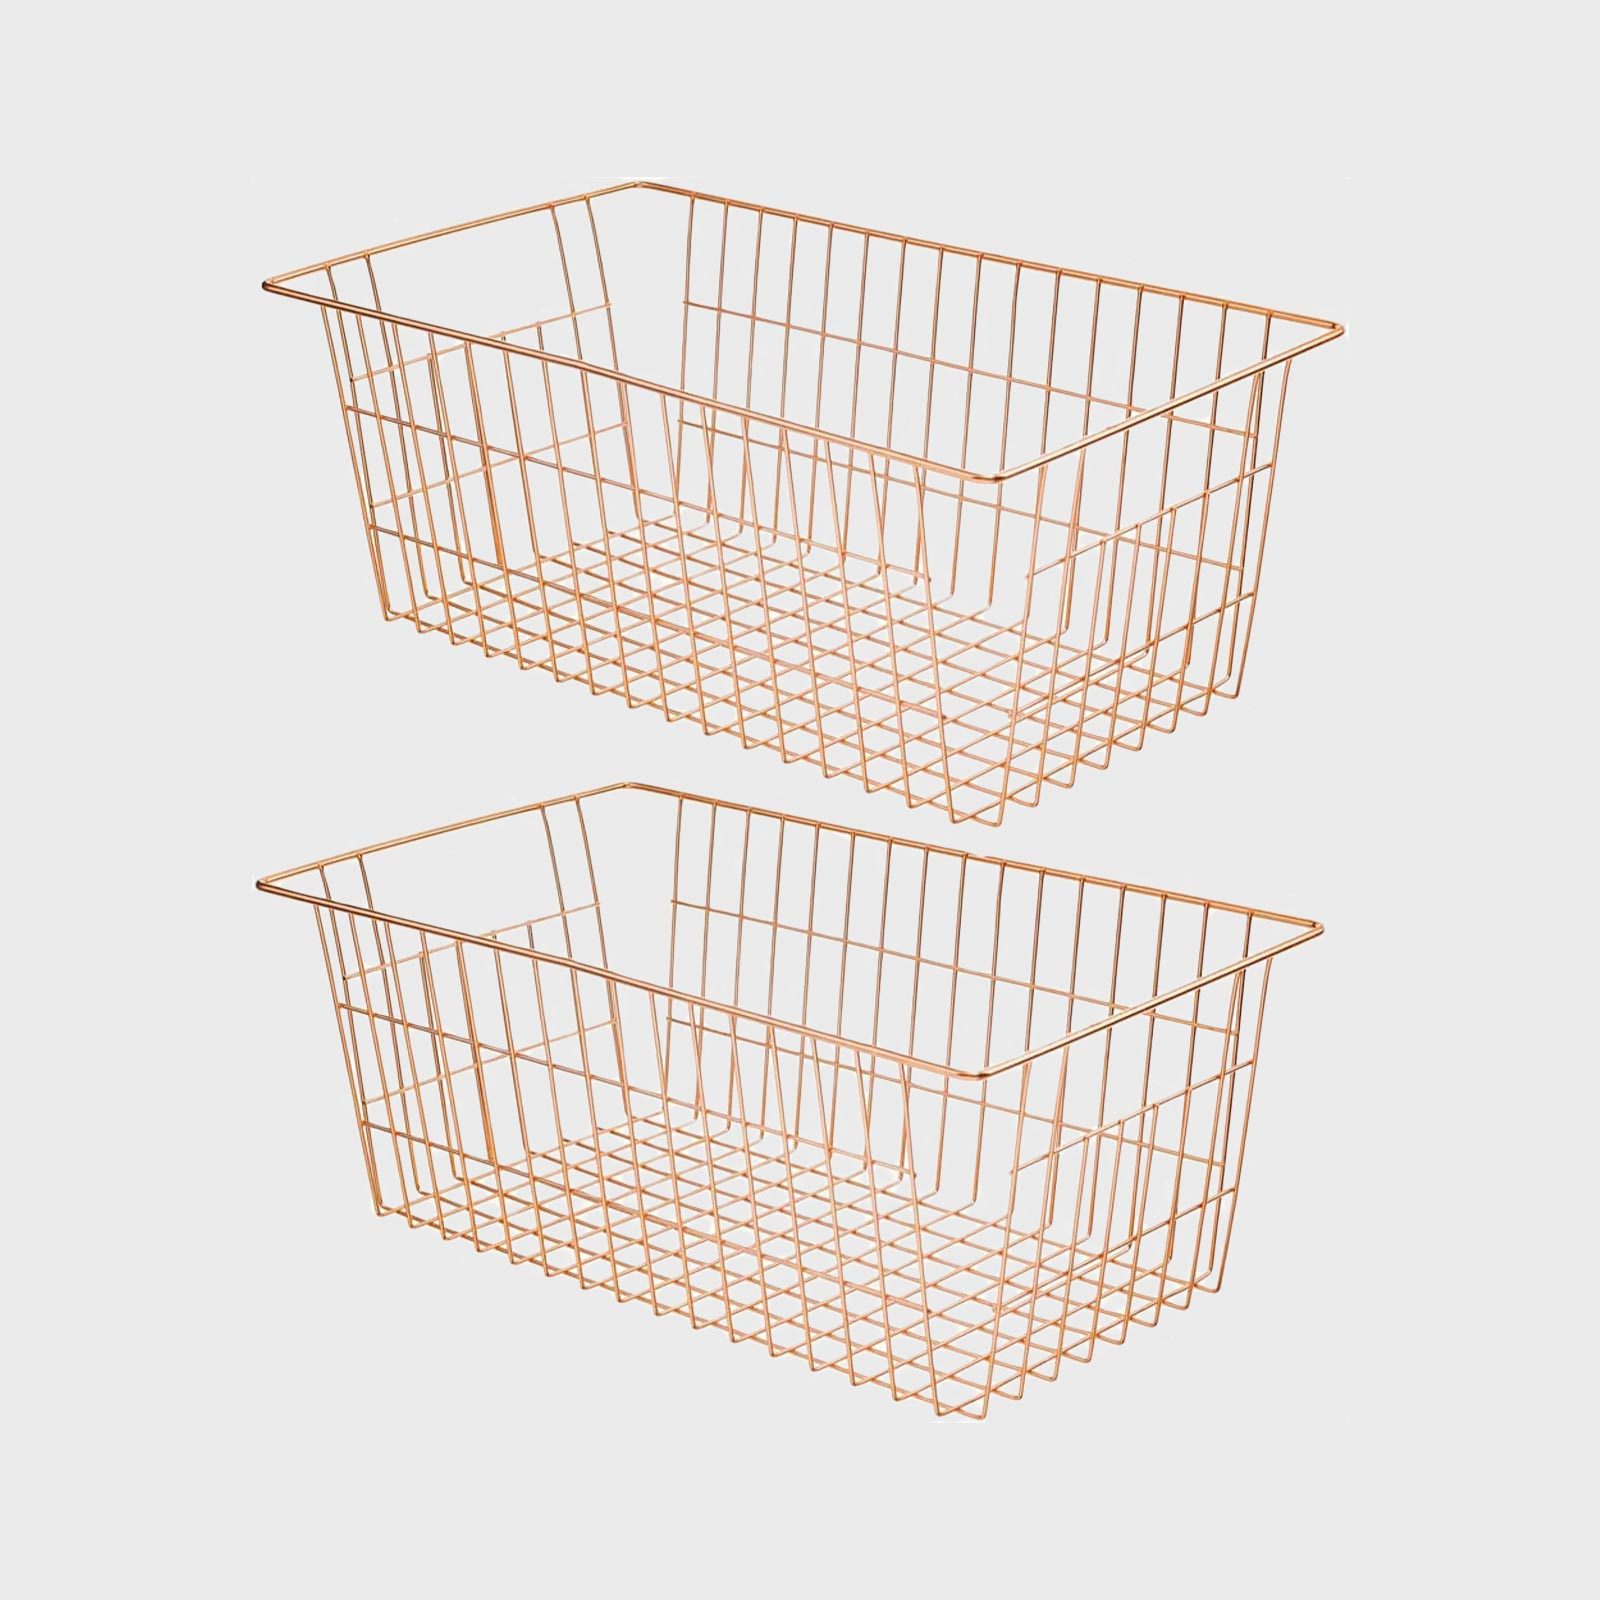 Sanno Farmhouse Freezer Baskets